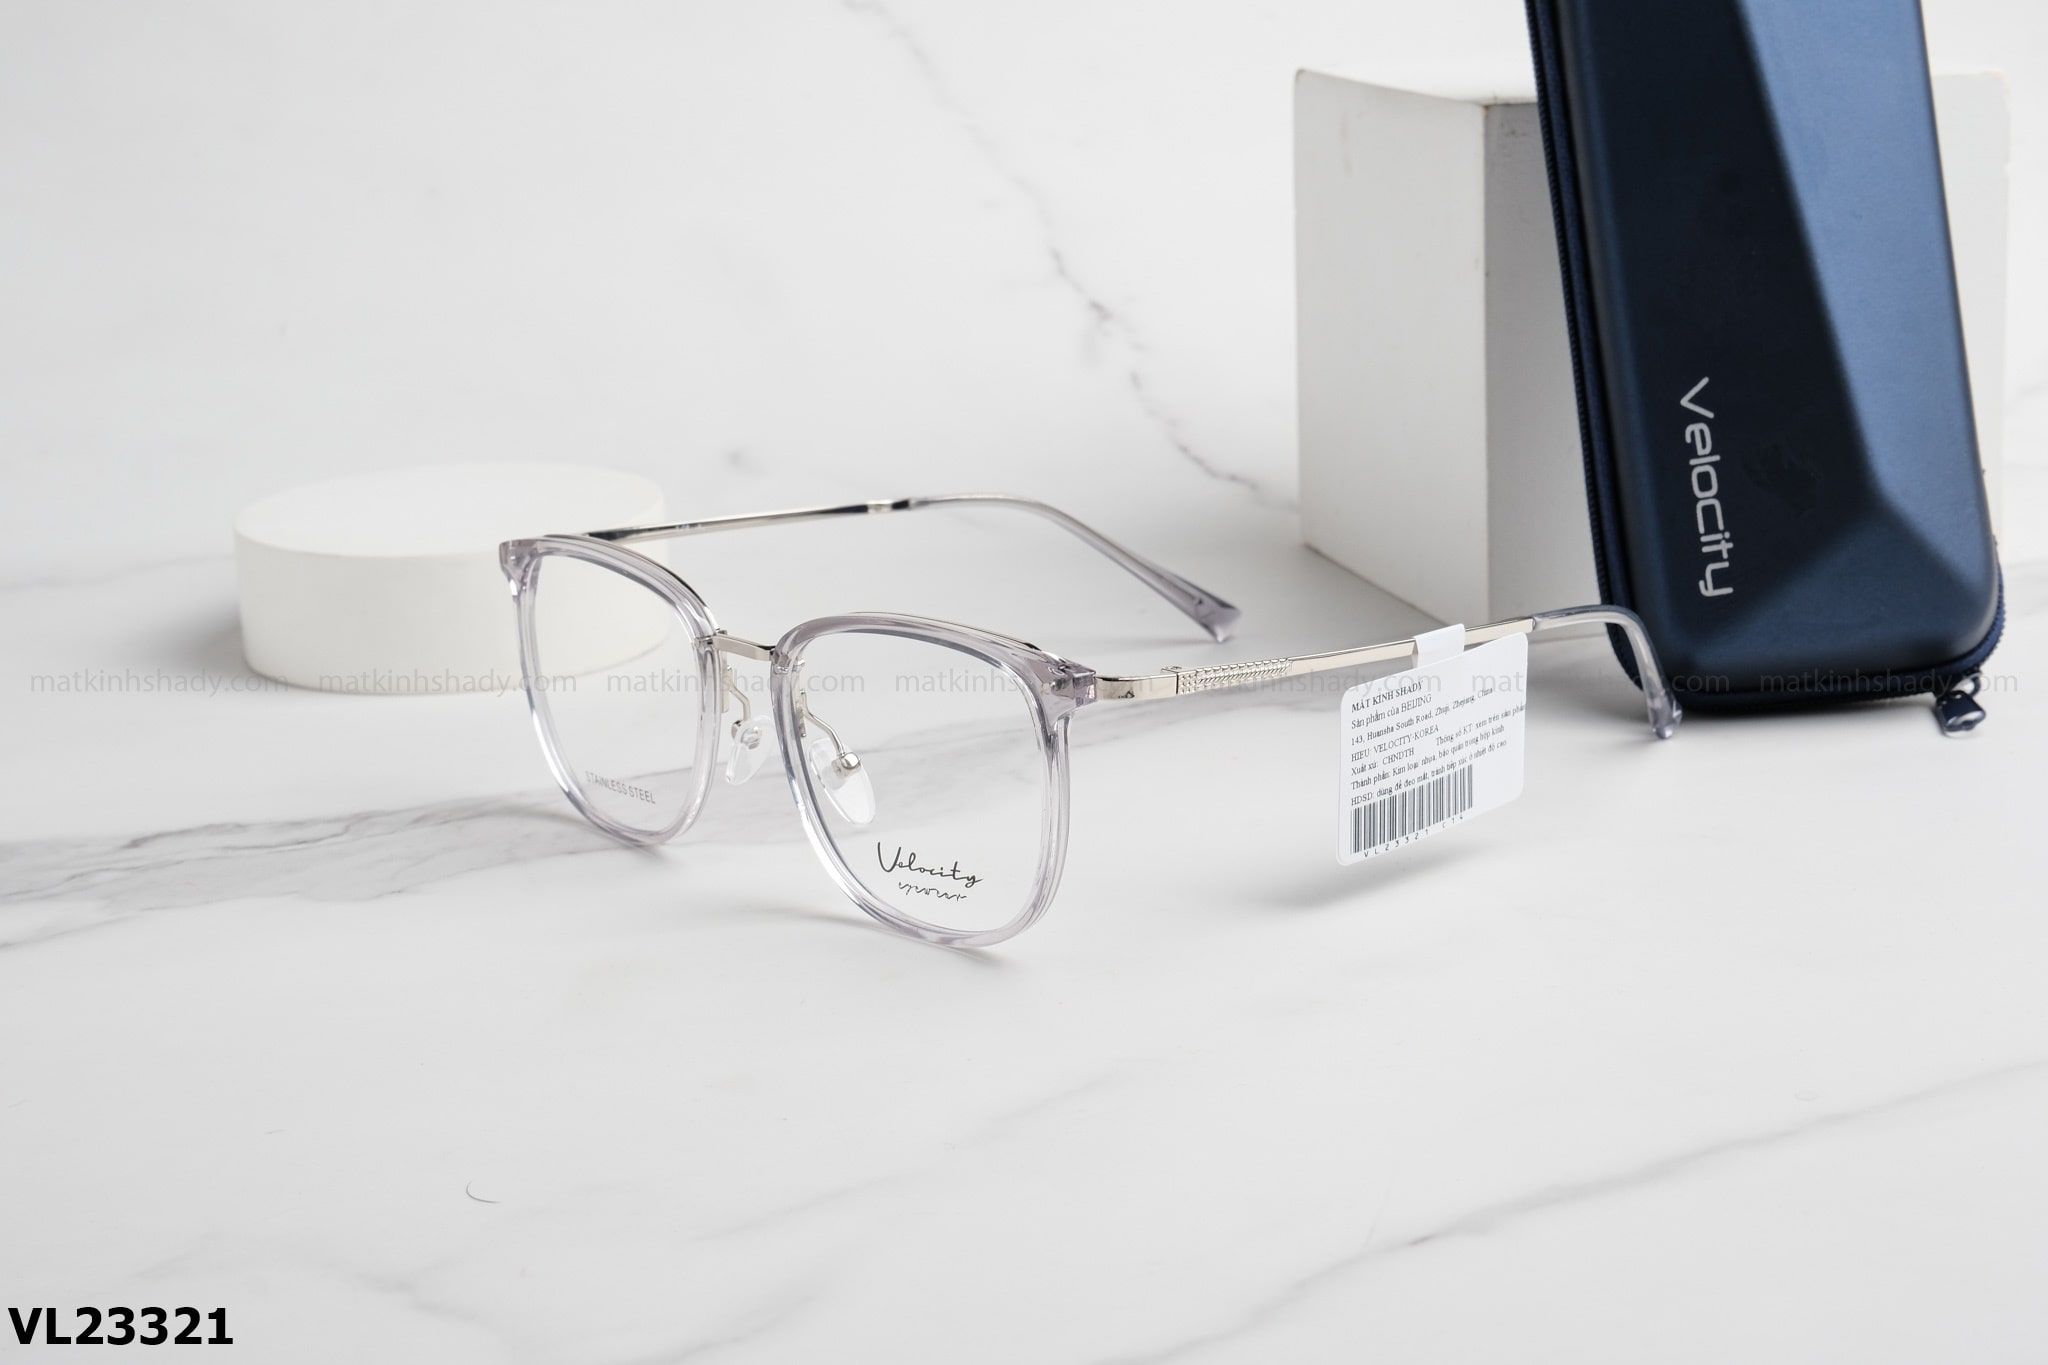  Velocity Eyewear - Glasses - VL23321 